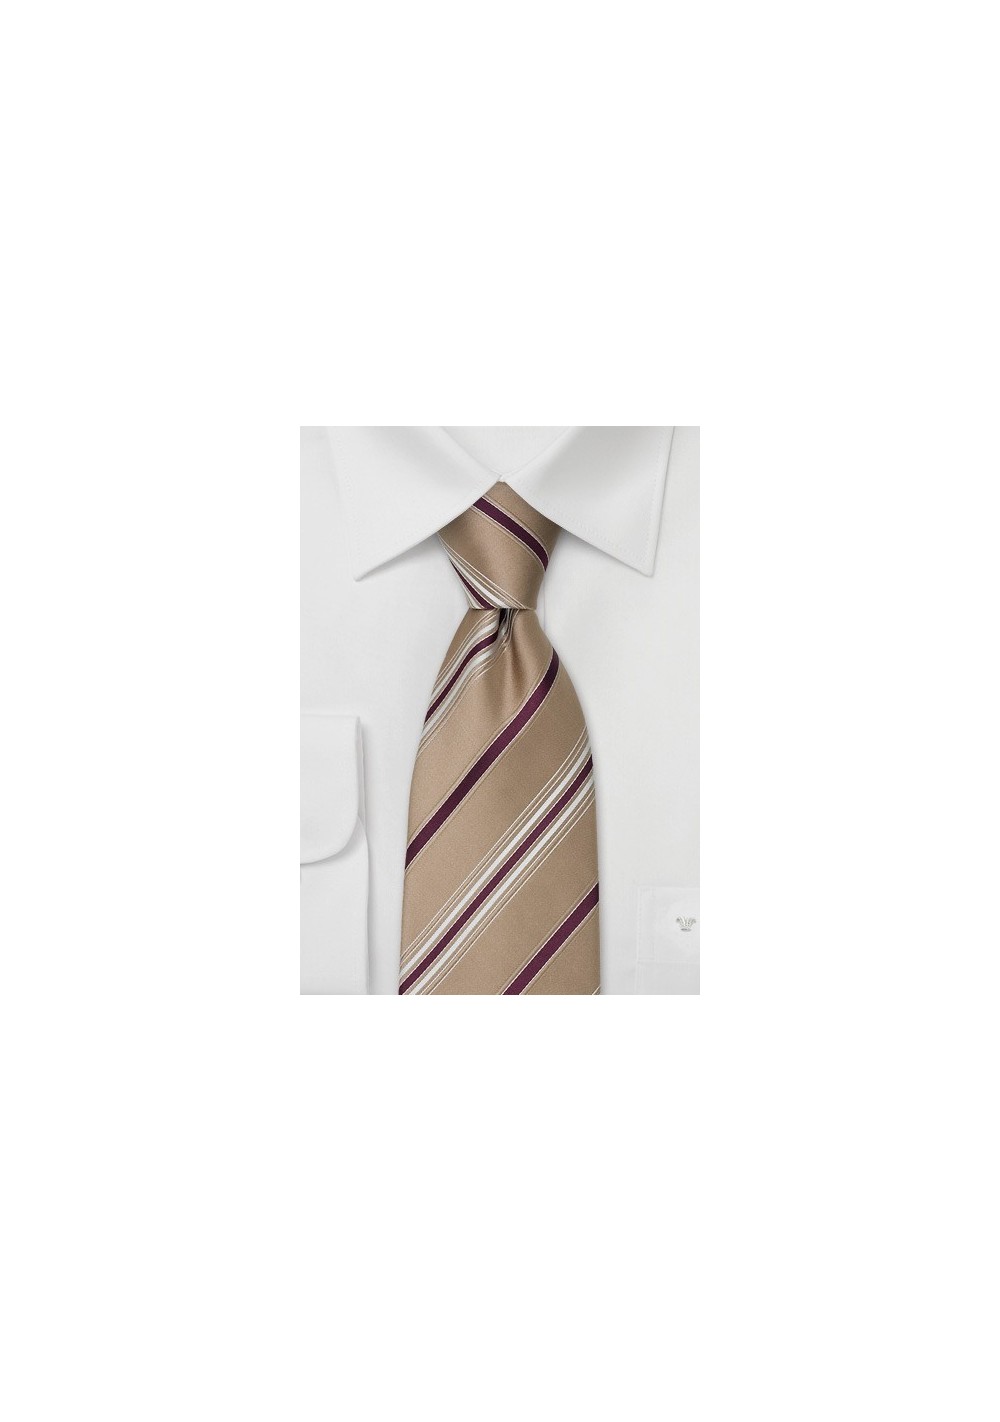 Tan Designer Ties - Striped Necktie by Cavallieri